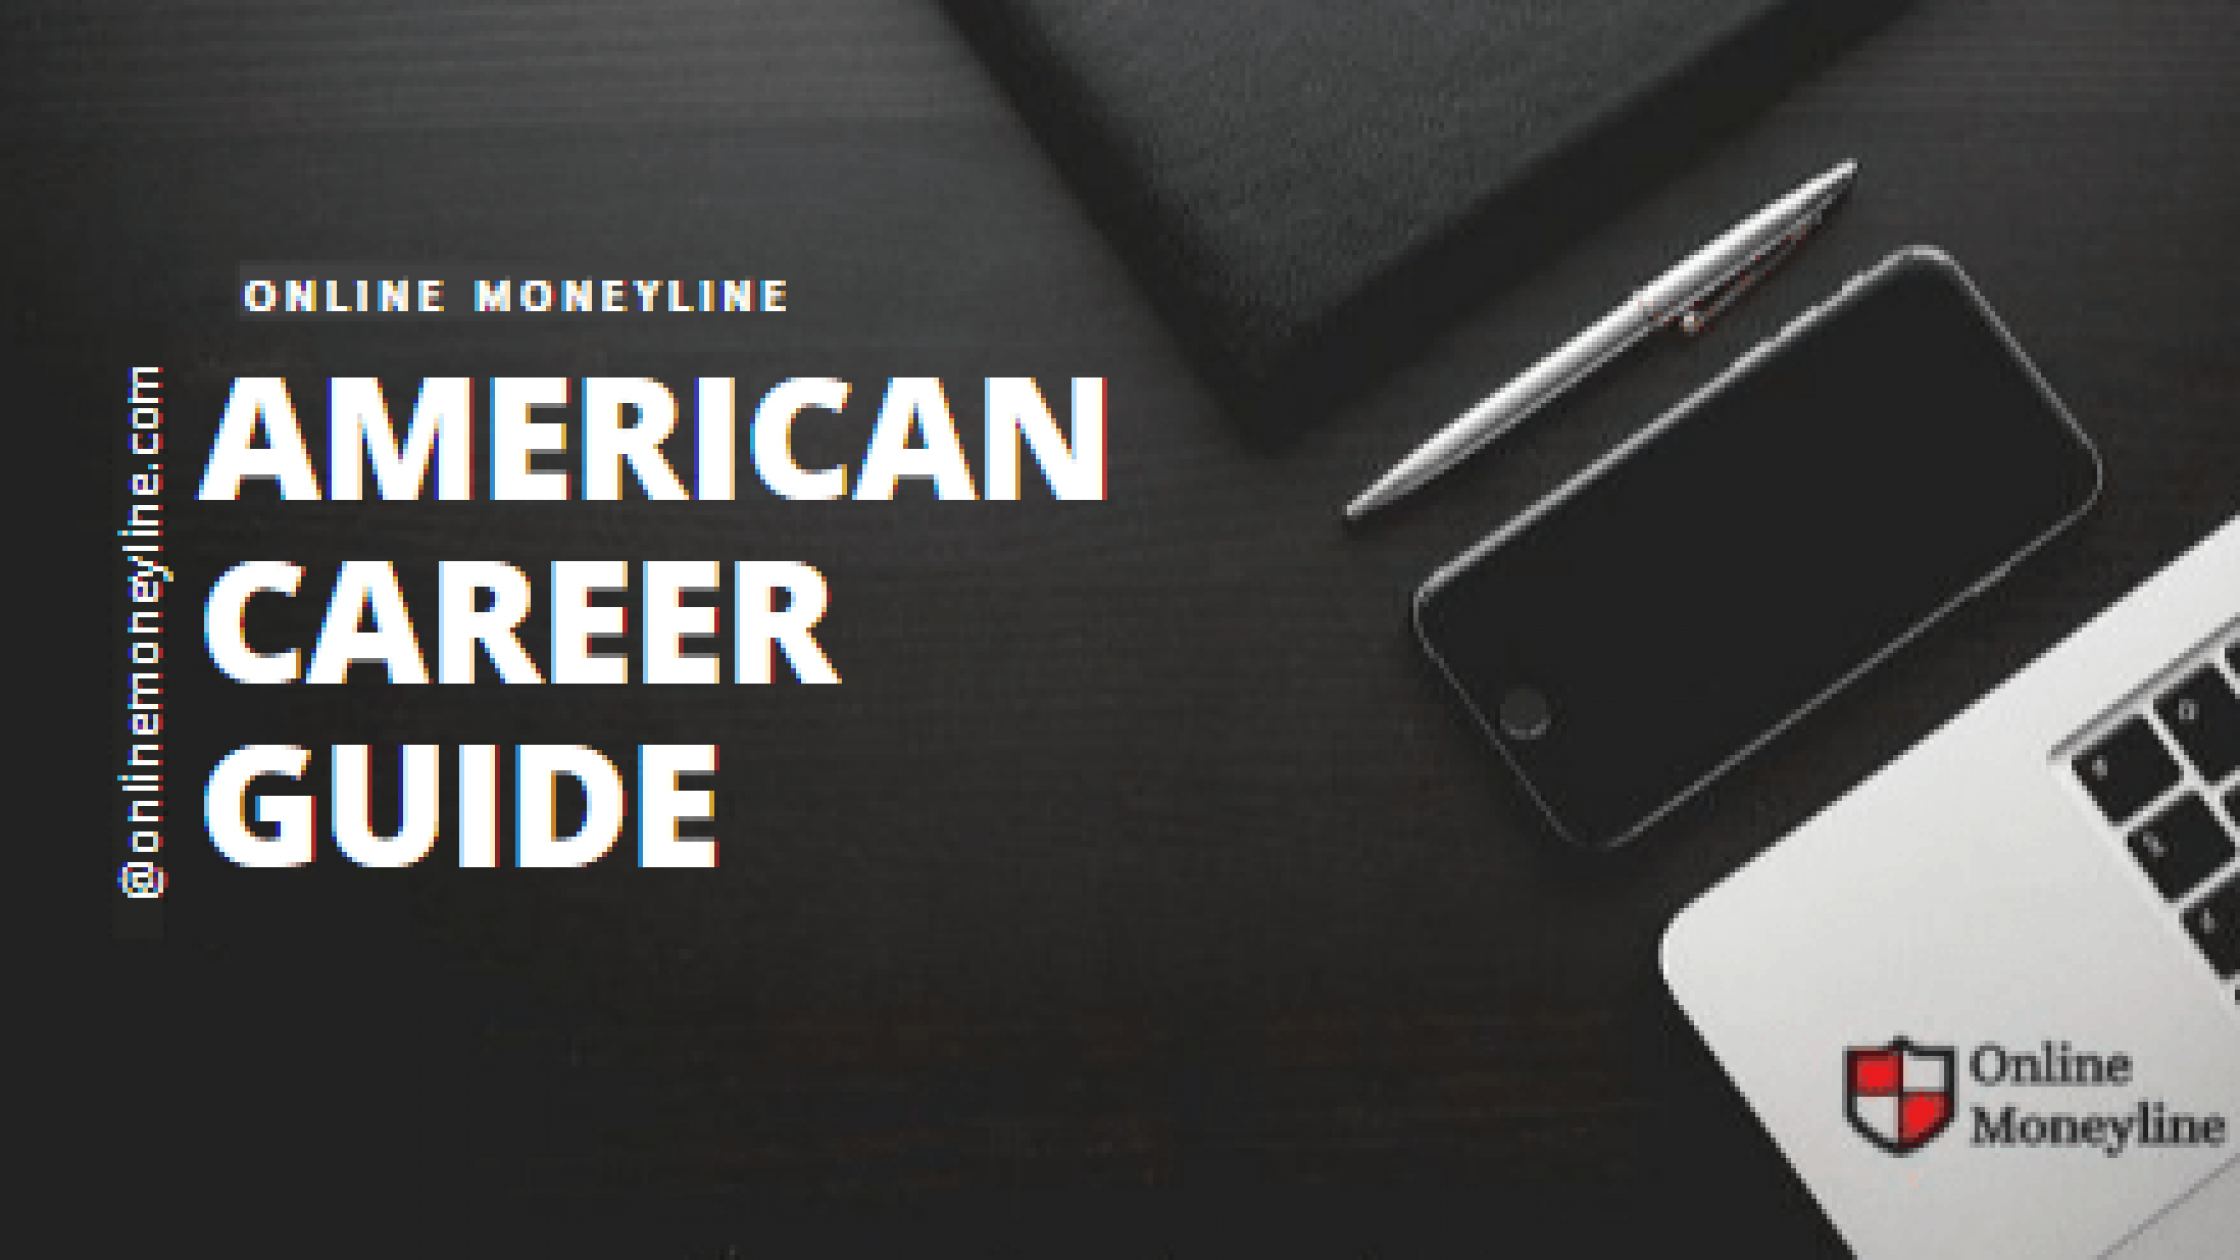 American Career Guide Review 